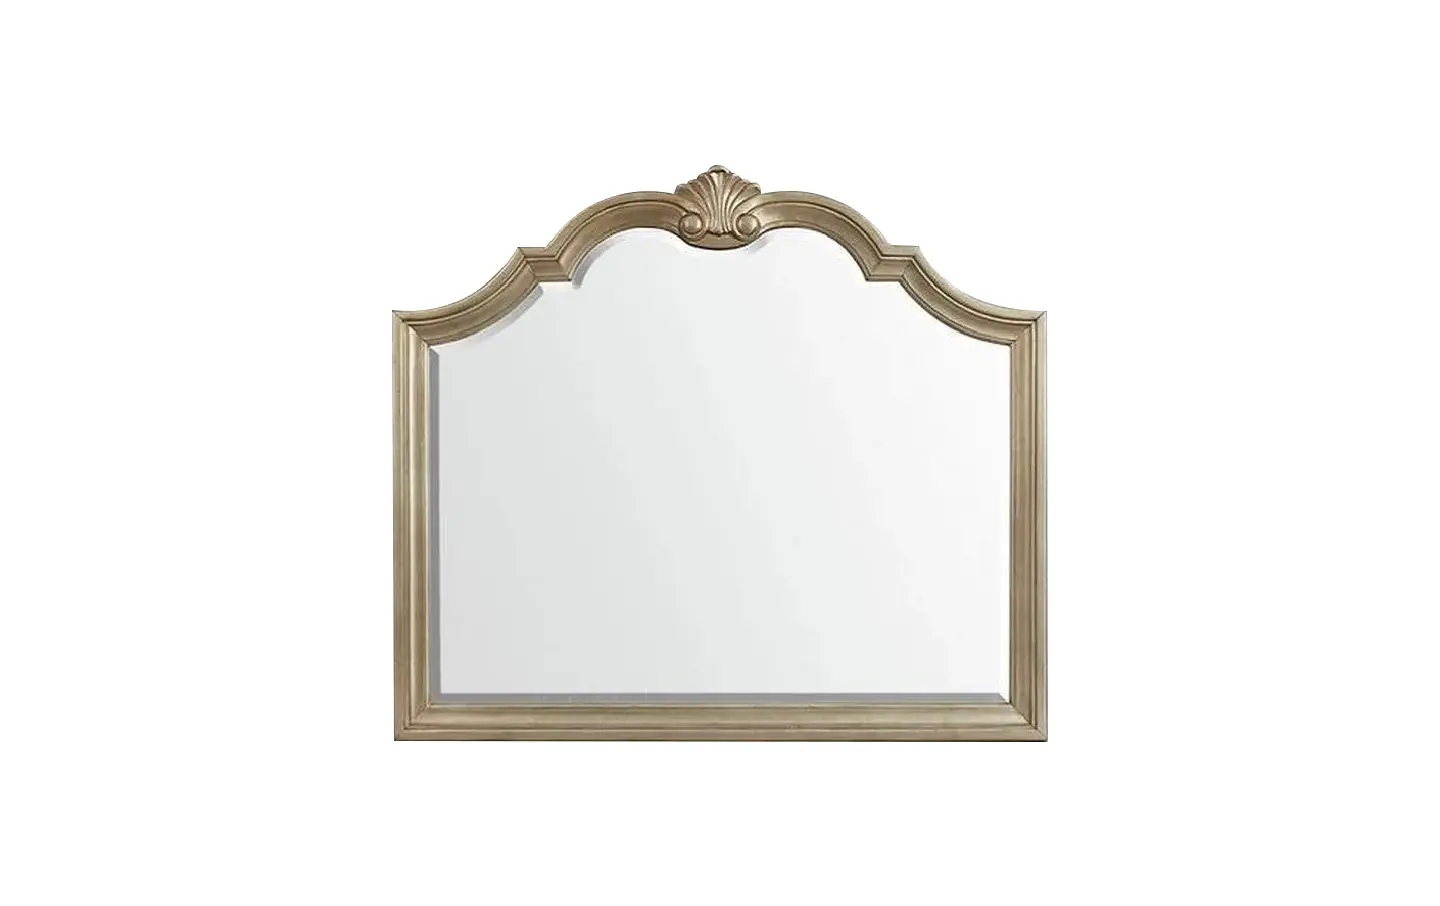 Vincenza mirror